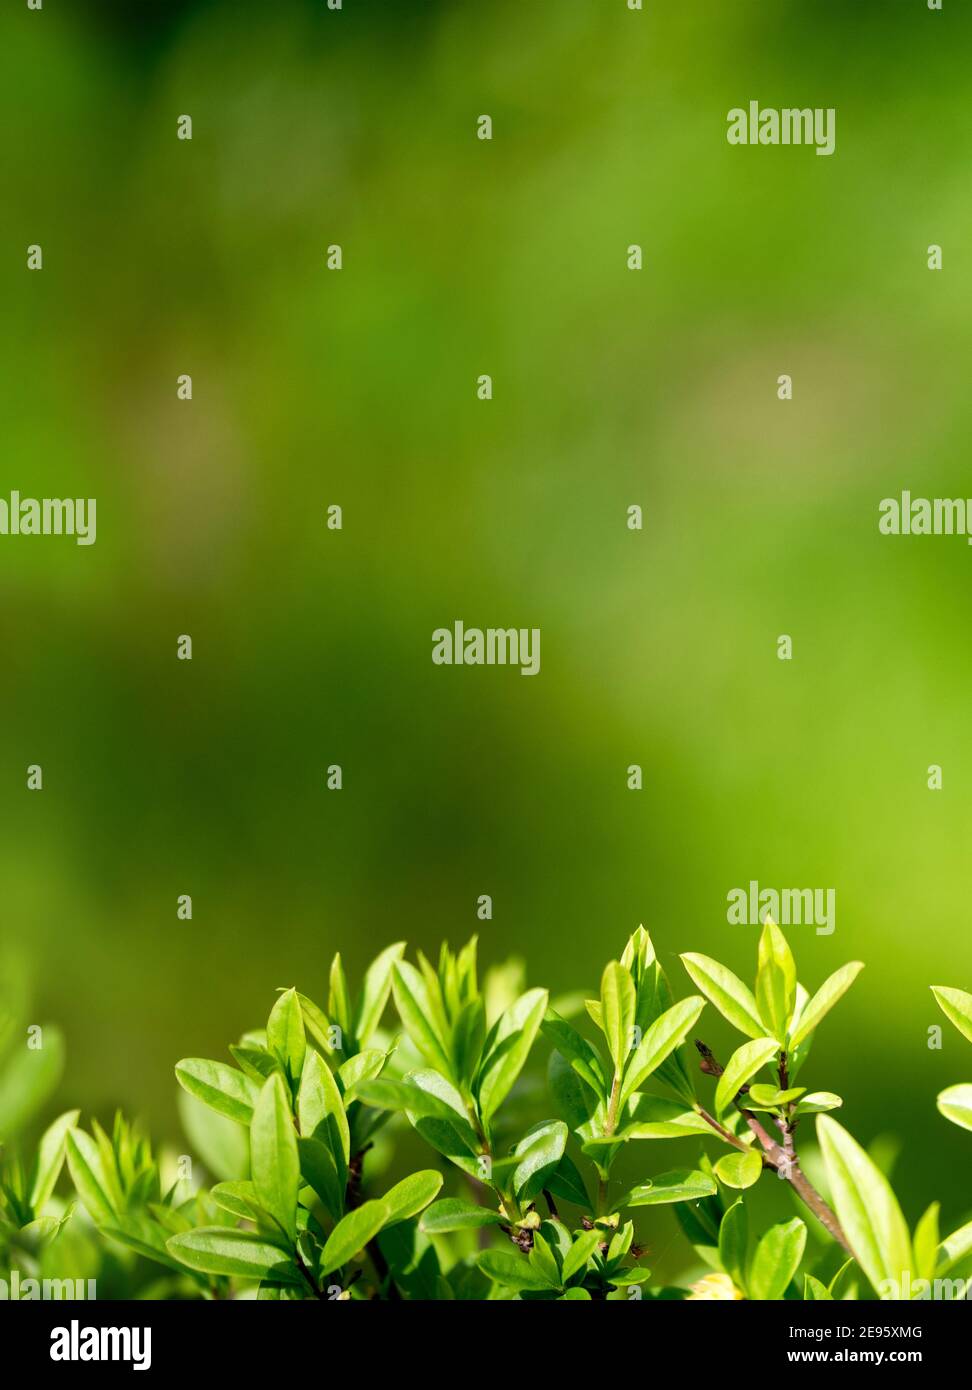 Vertikaler Hintergrund für Design mit Strauchblättern. Schöner Hintergrund mit viel Grün. Nture Hintergrund. Stockfoto